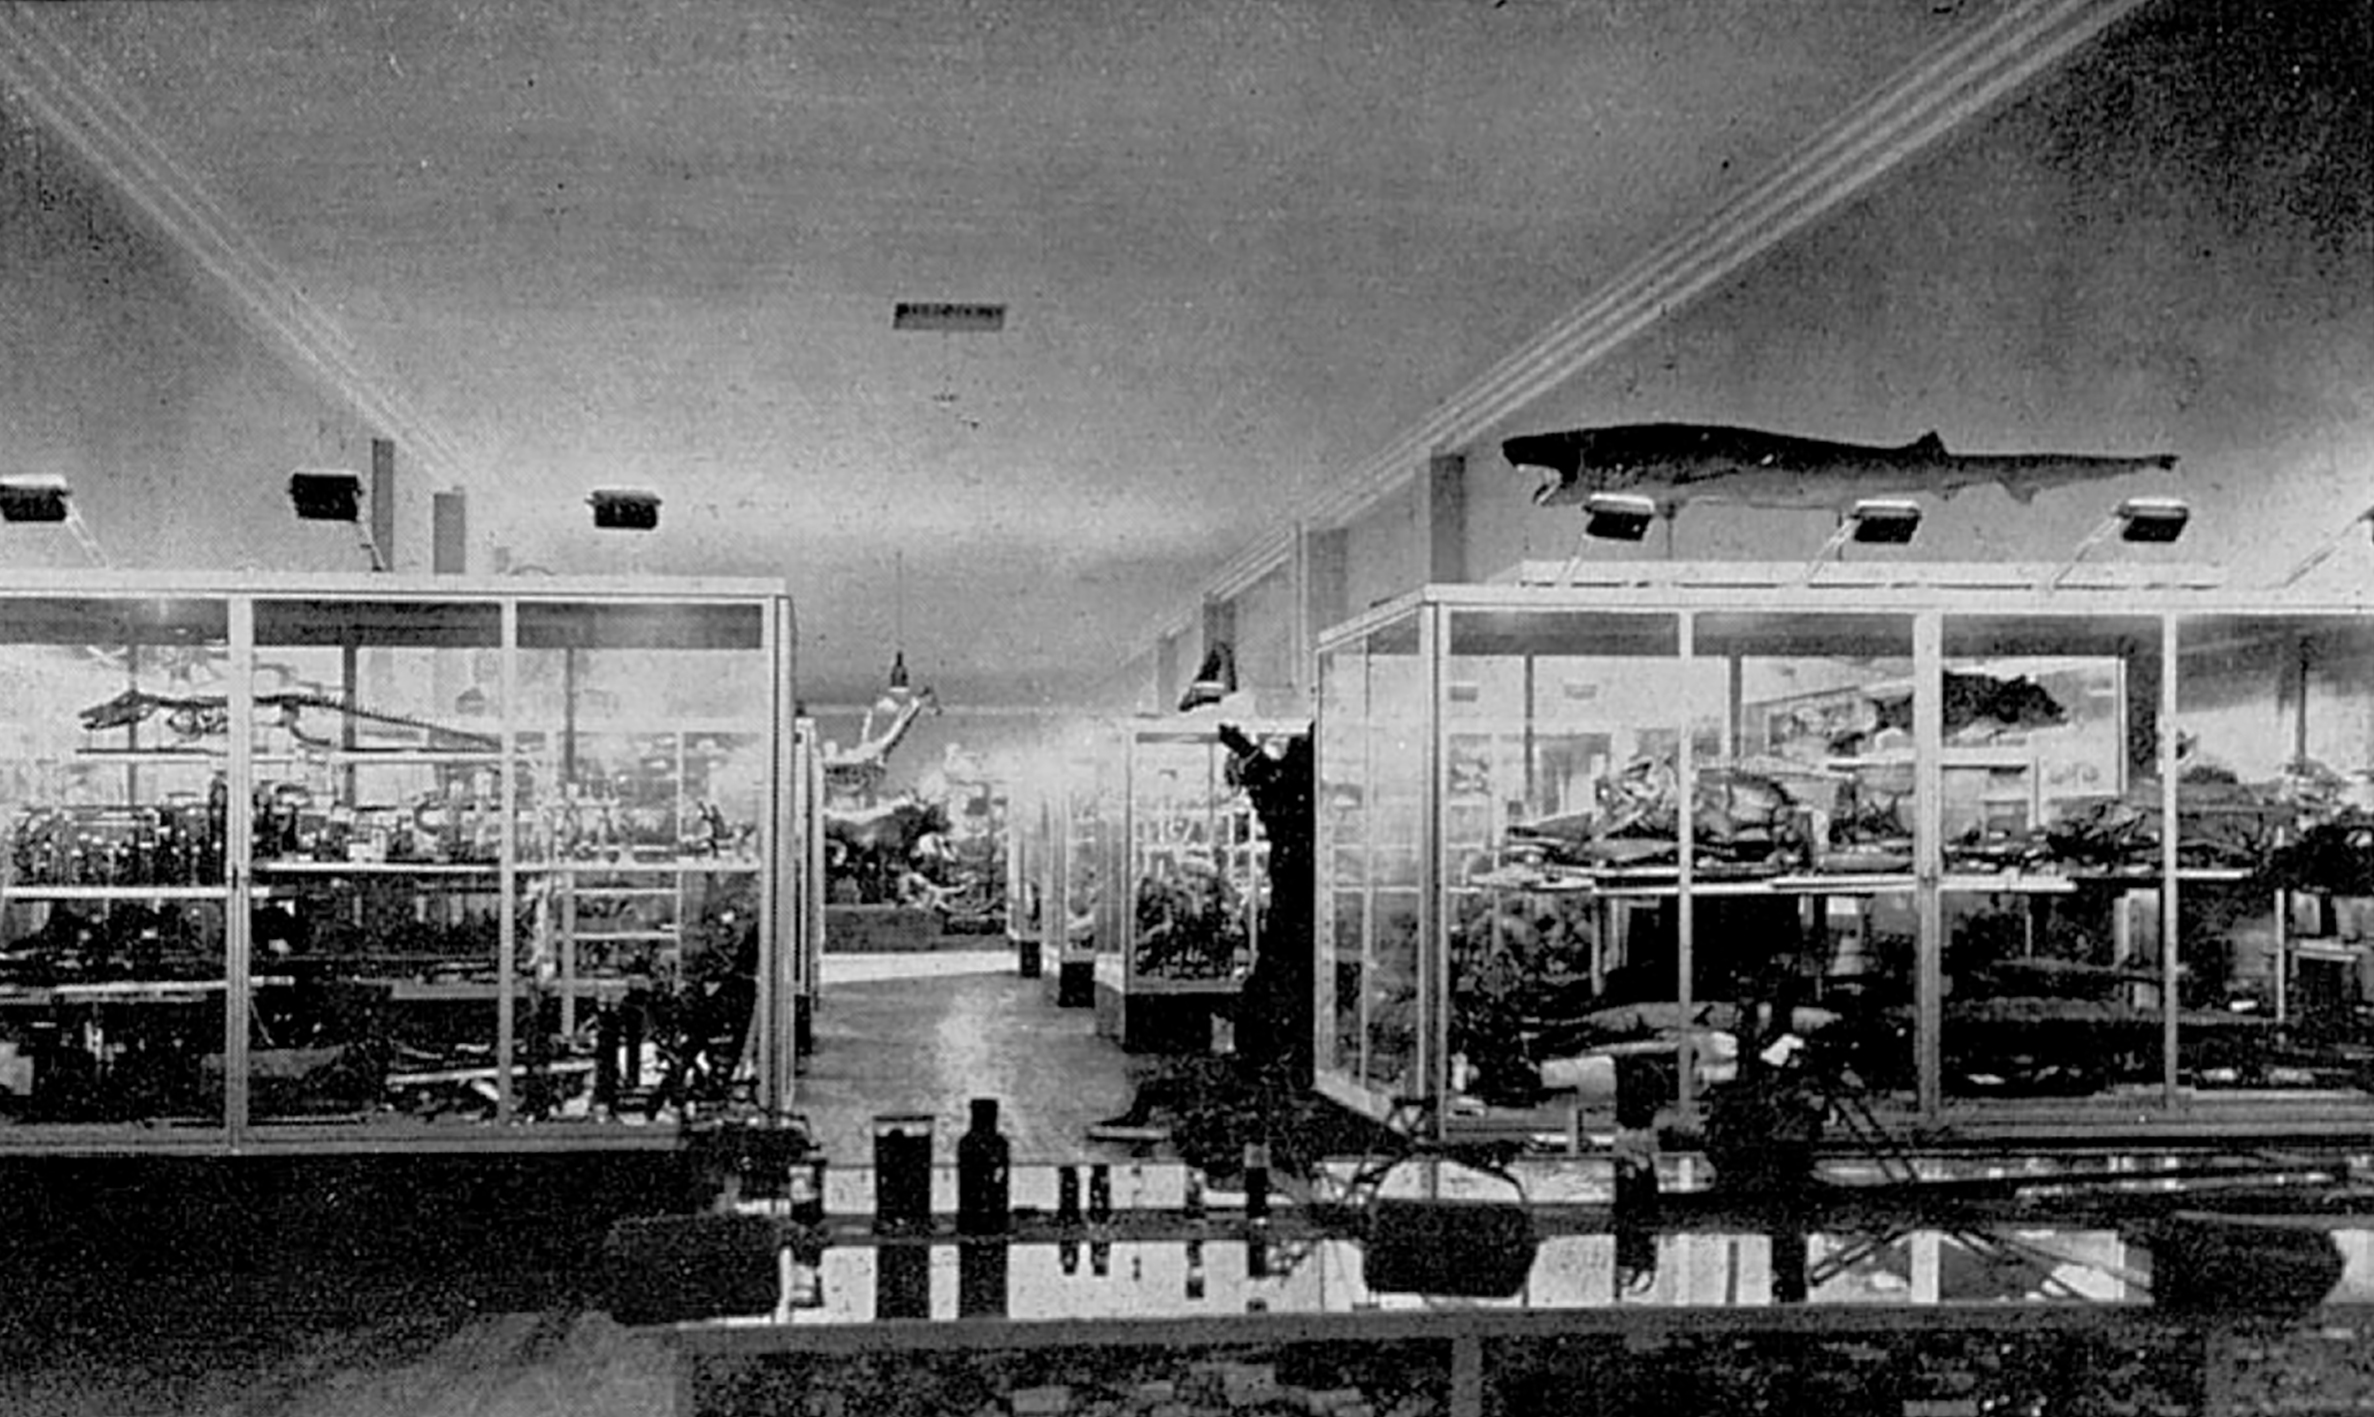 Portes et vitrines du Musée et institut de zoologie, Nancy (J. et M. André, arch.), 1933.